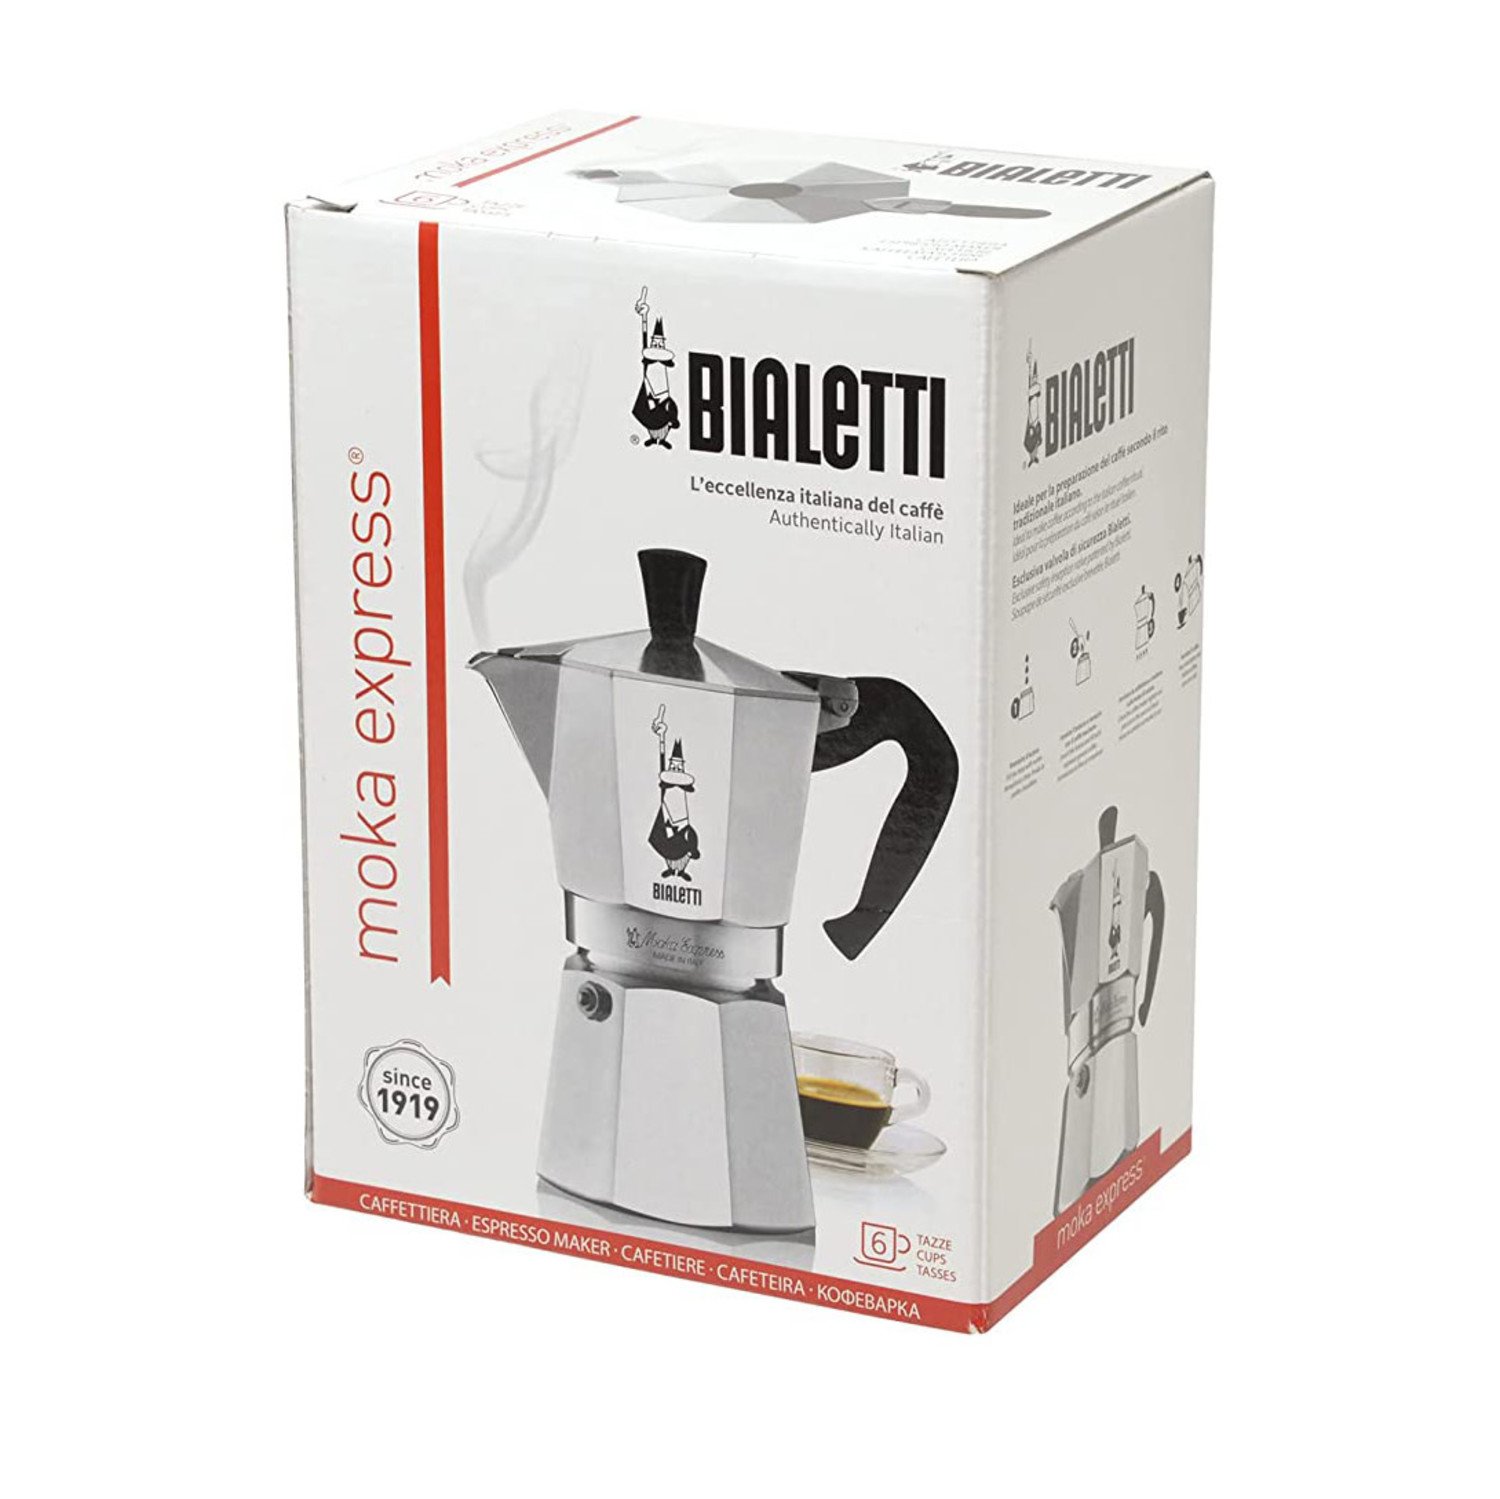 Arsenal Adición Específico Bialetti Moka Express 6 cup Espresso Maker - Whisk